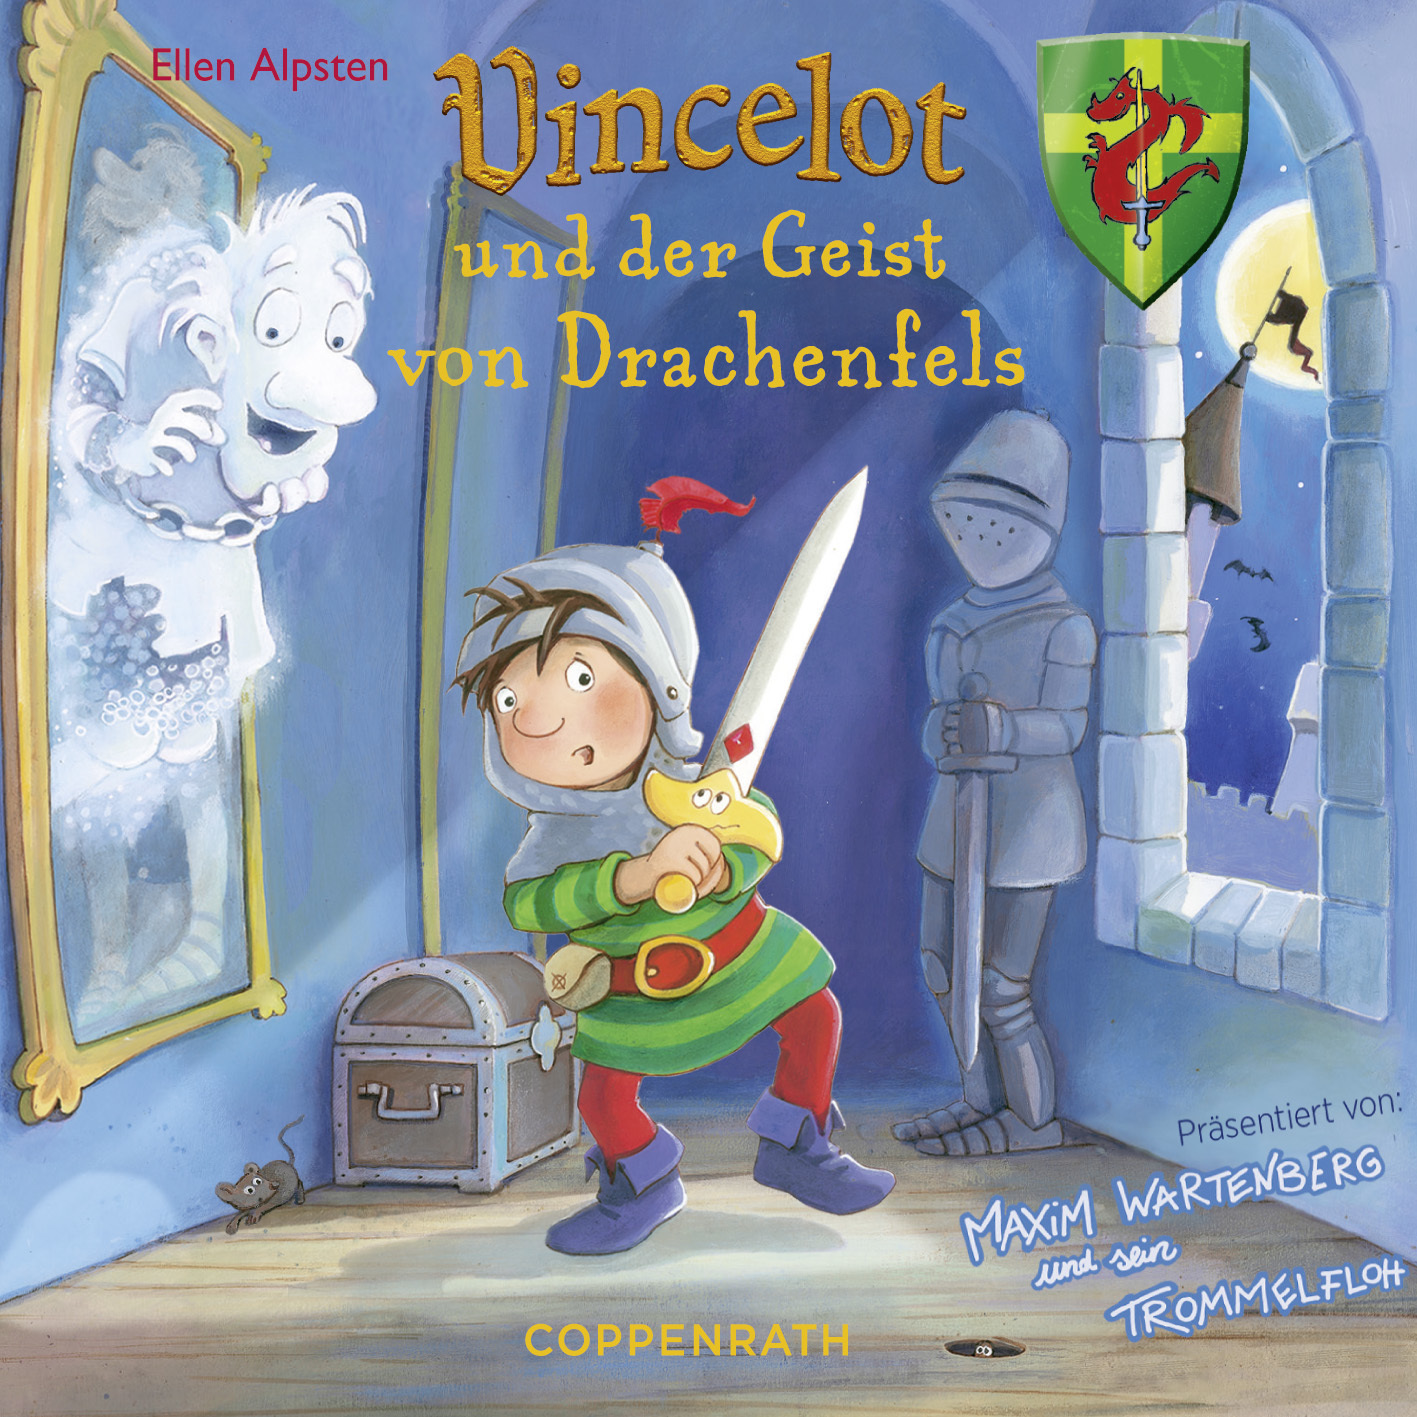 Vincelot und der Geist von Drachenfels (CD)